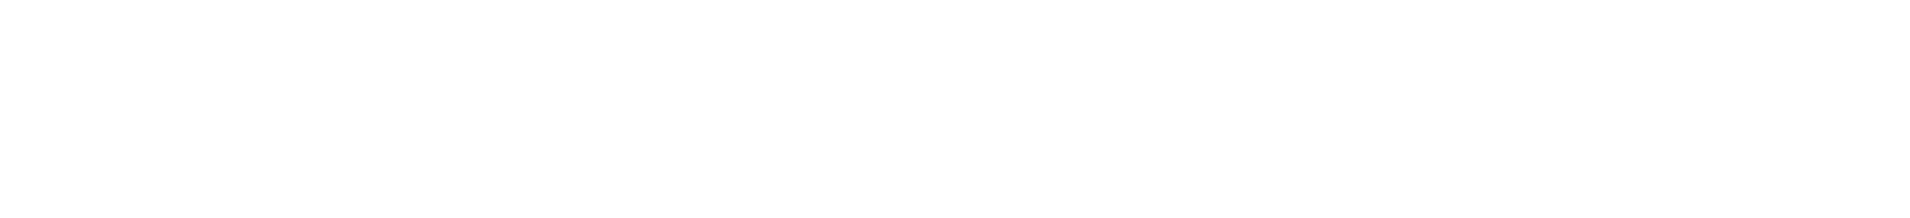 Hotel Melle-Osnabrück logo